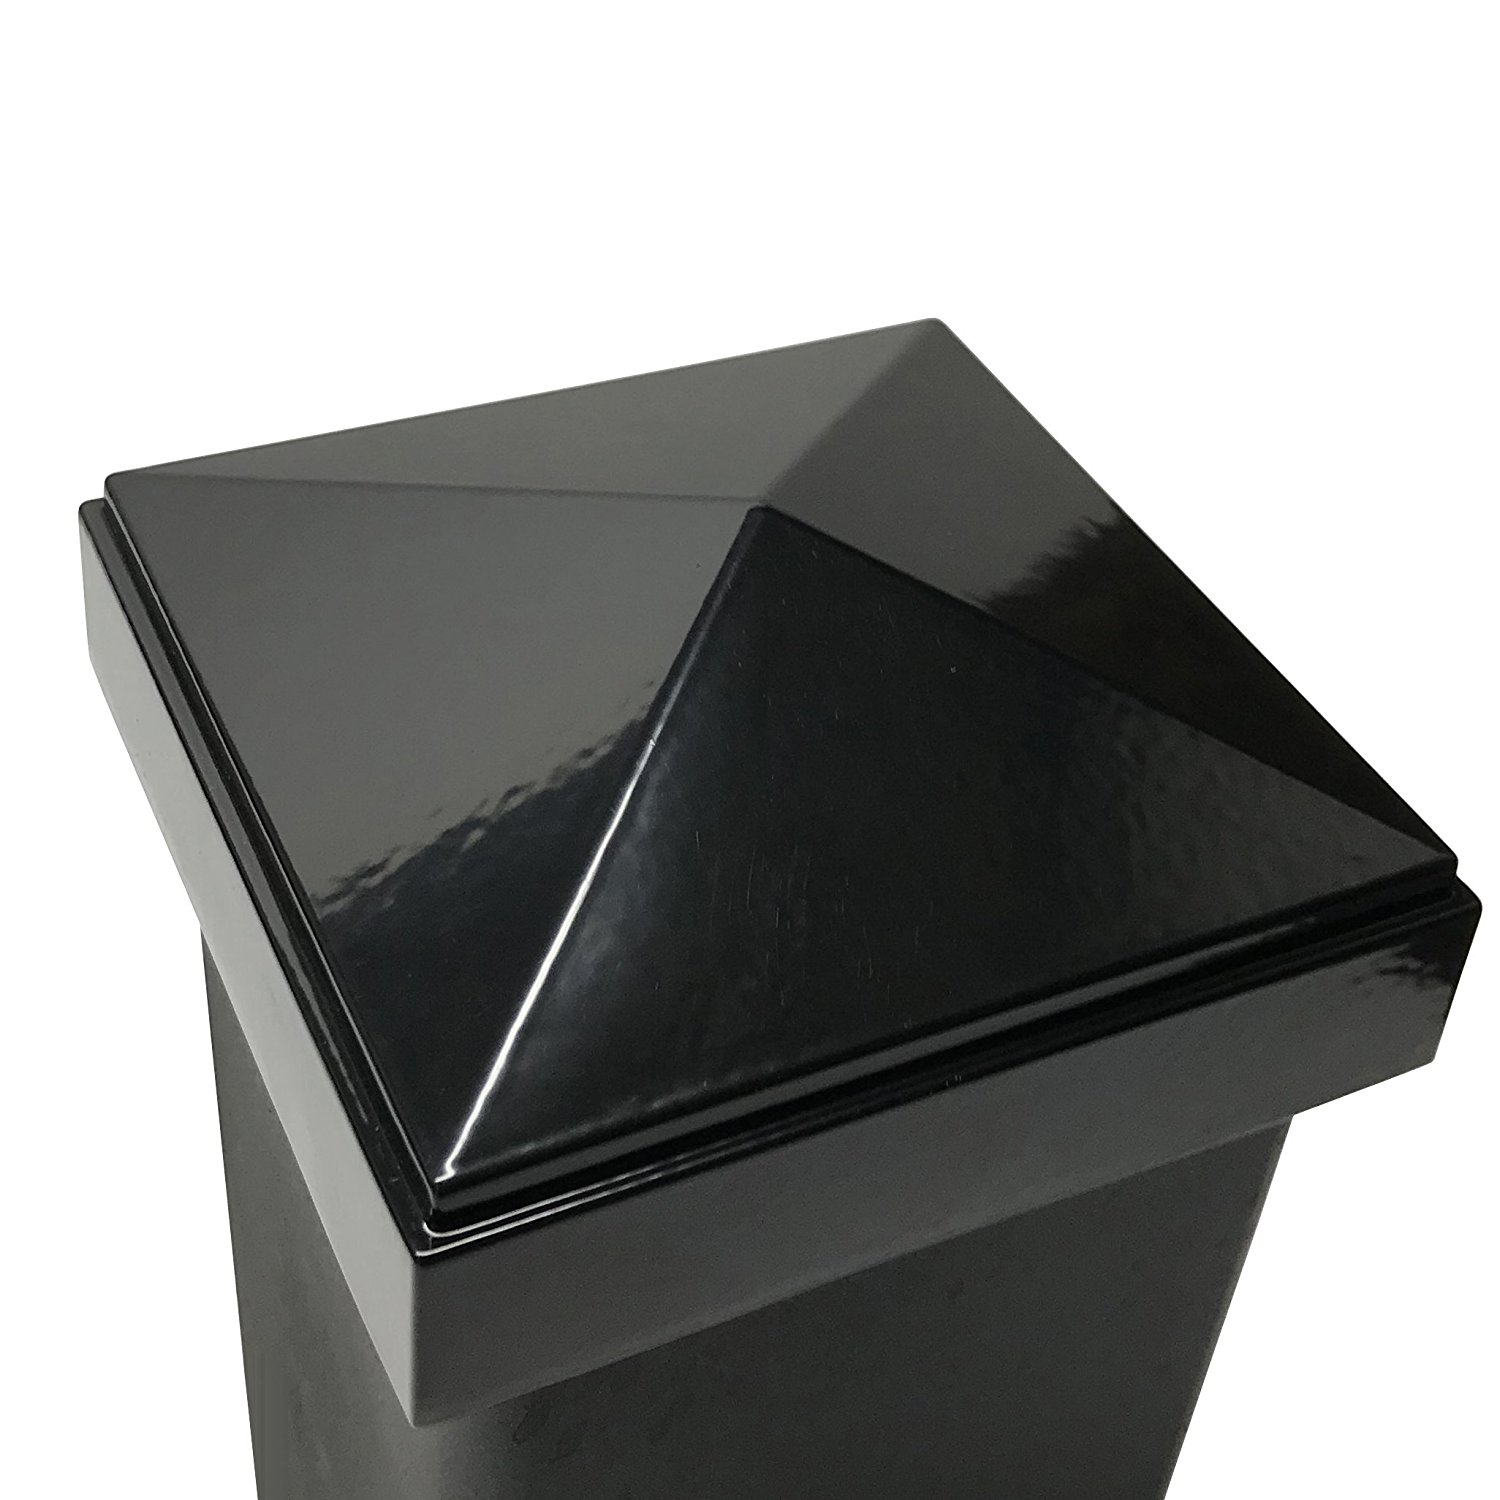 3" x 3" Decorex Hardware Aluminium Pyramid Post Cap for Metal Posts Black 